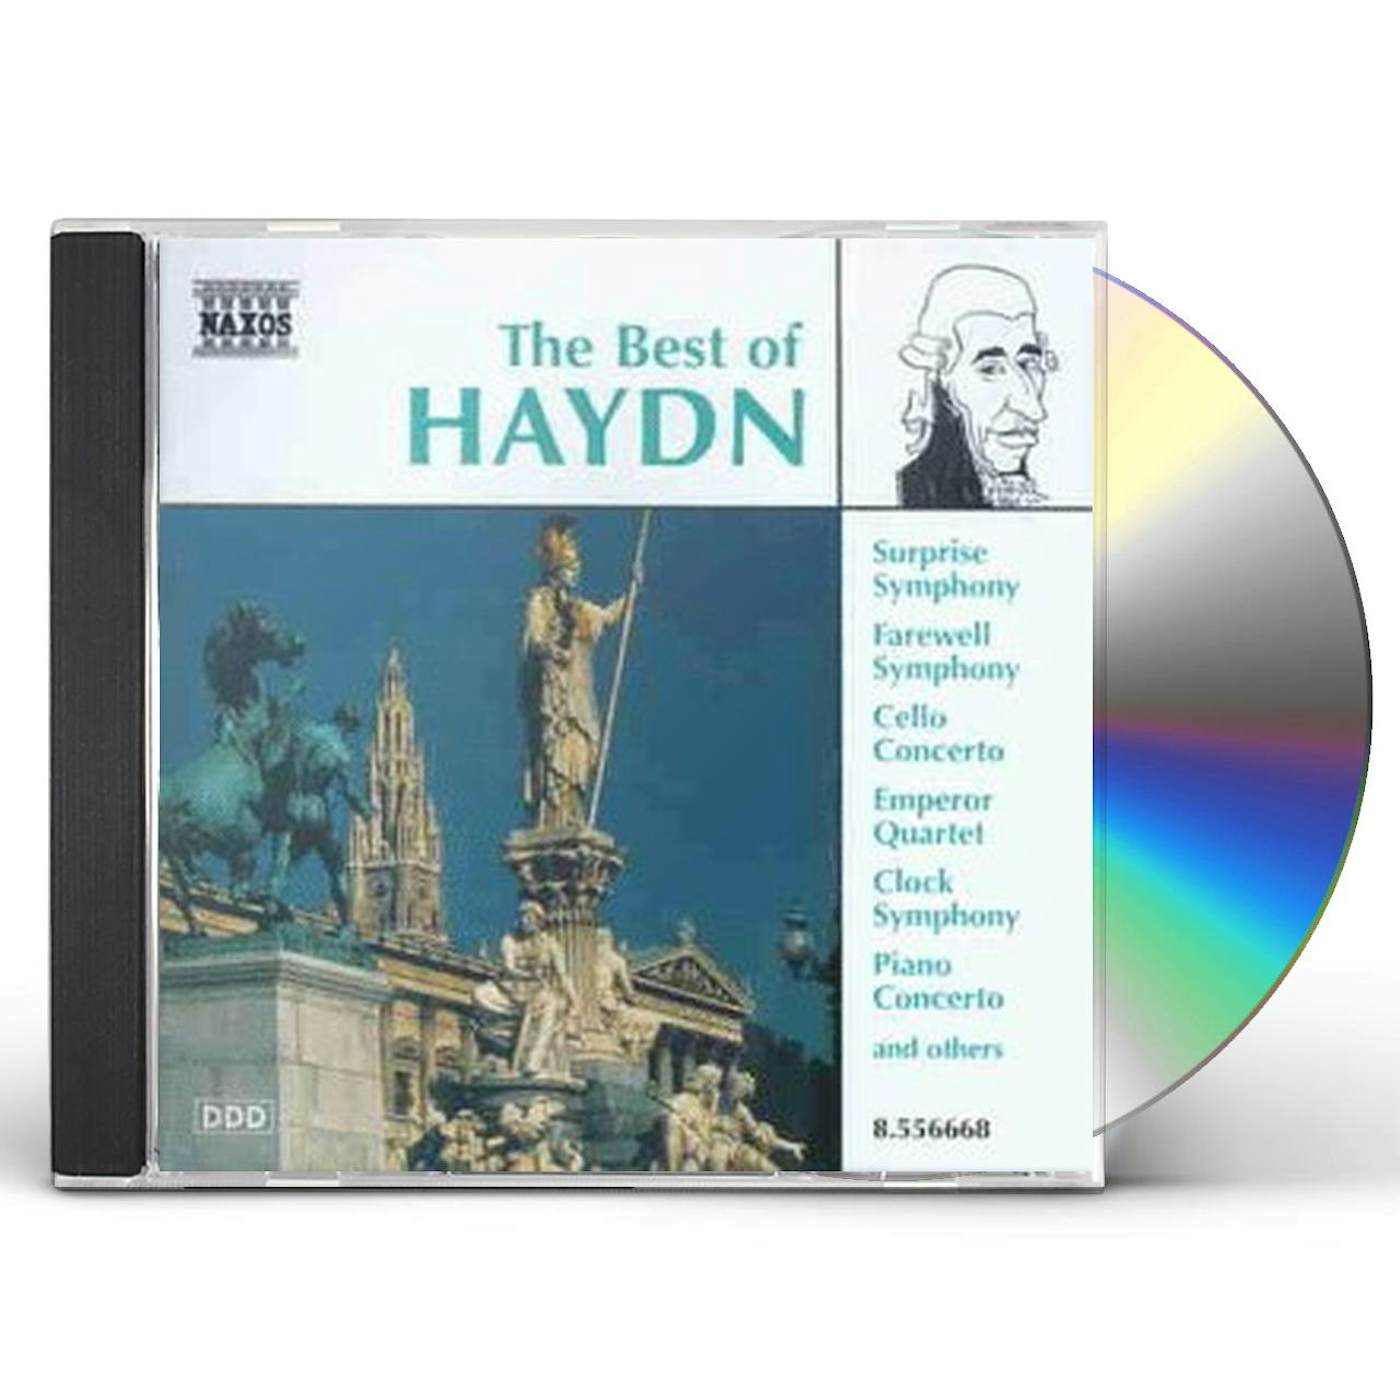 BEST OF HAYDN CD